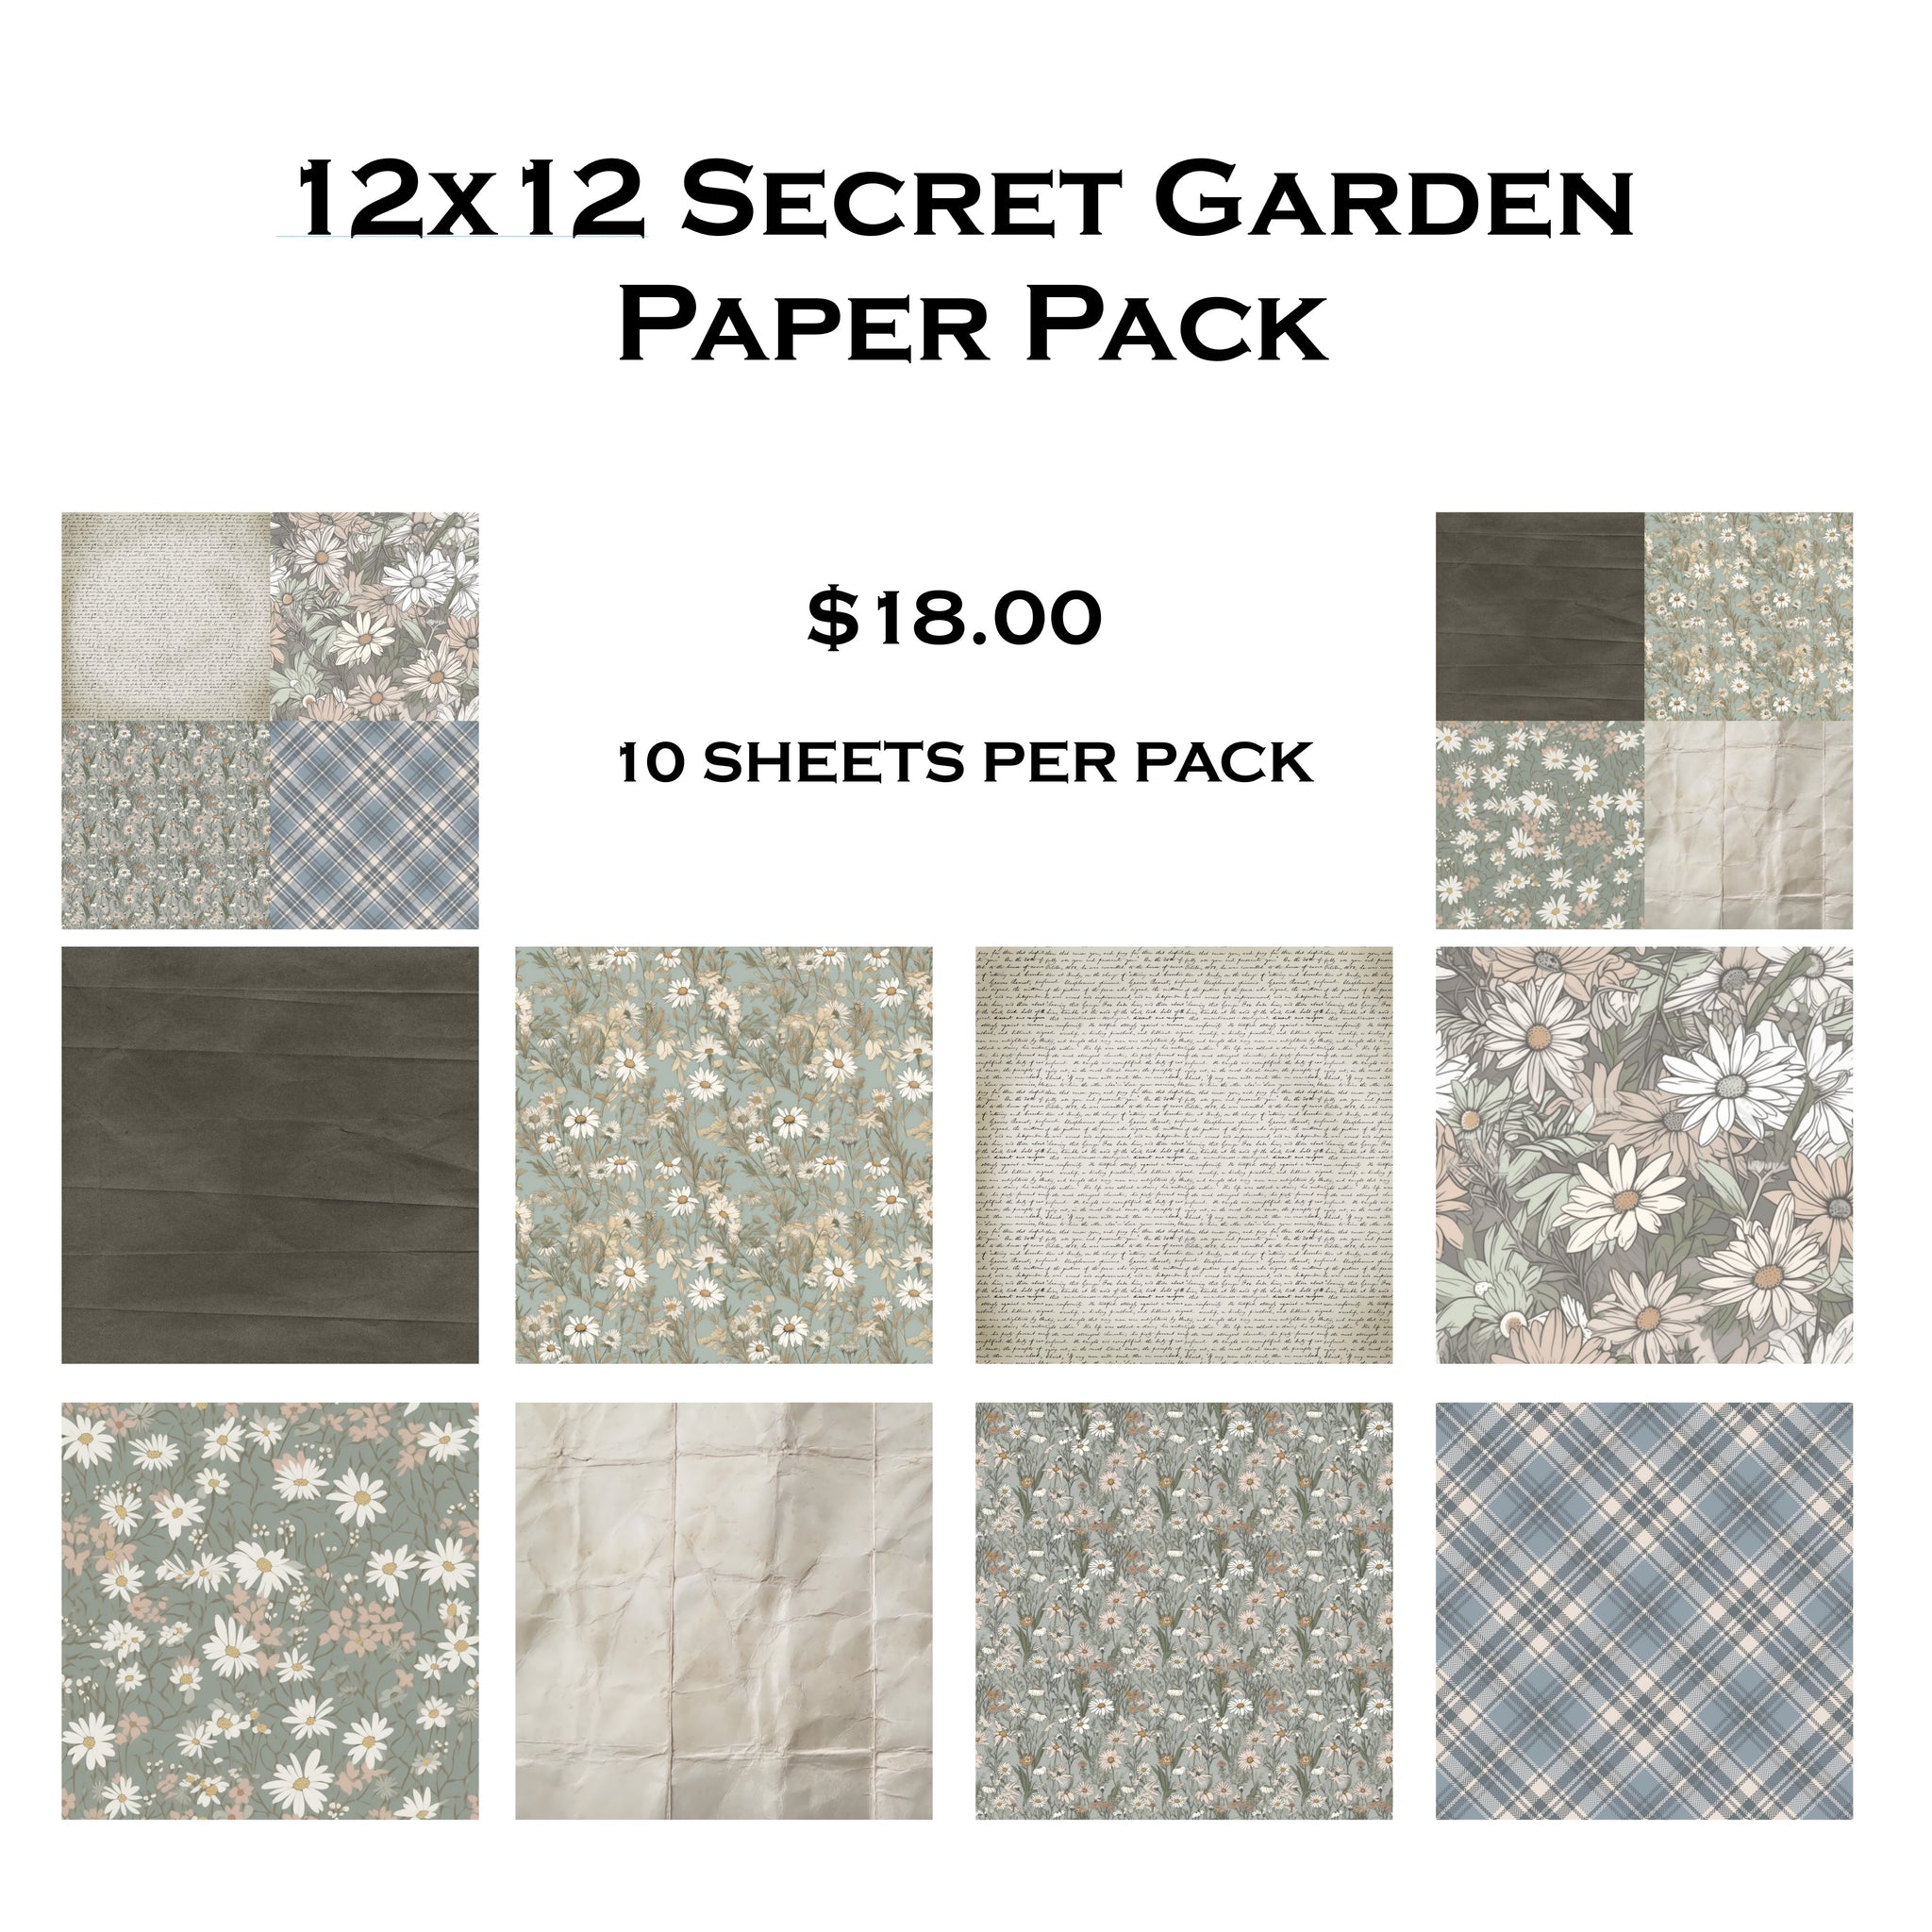 Secret Garden 12x12 Paper Pack